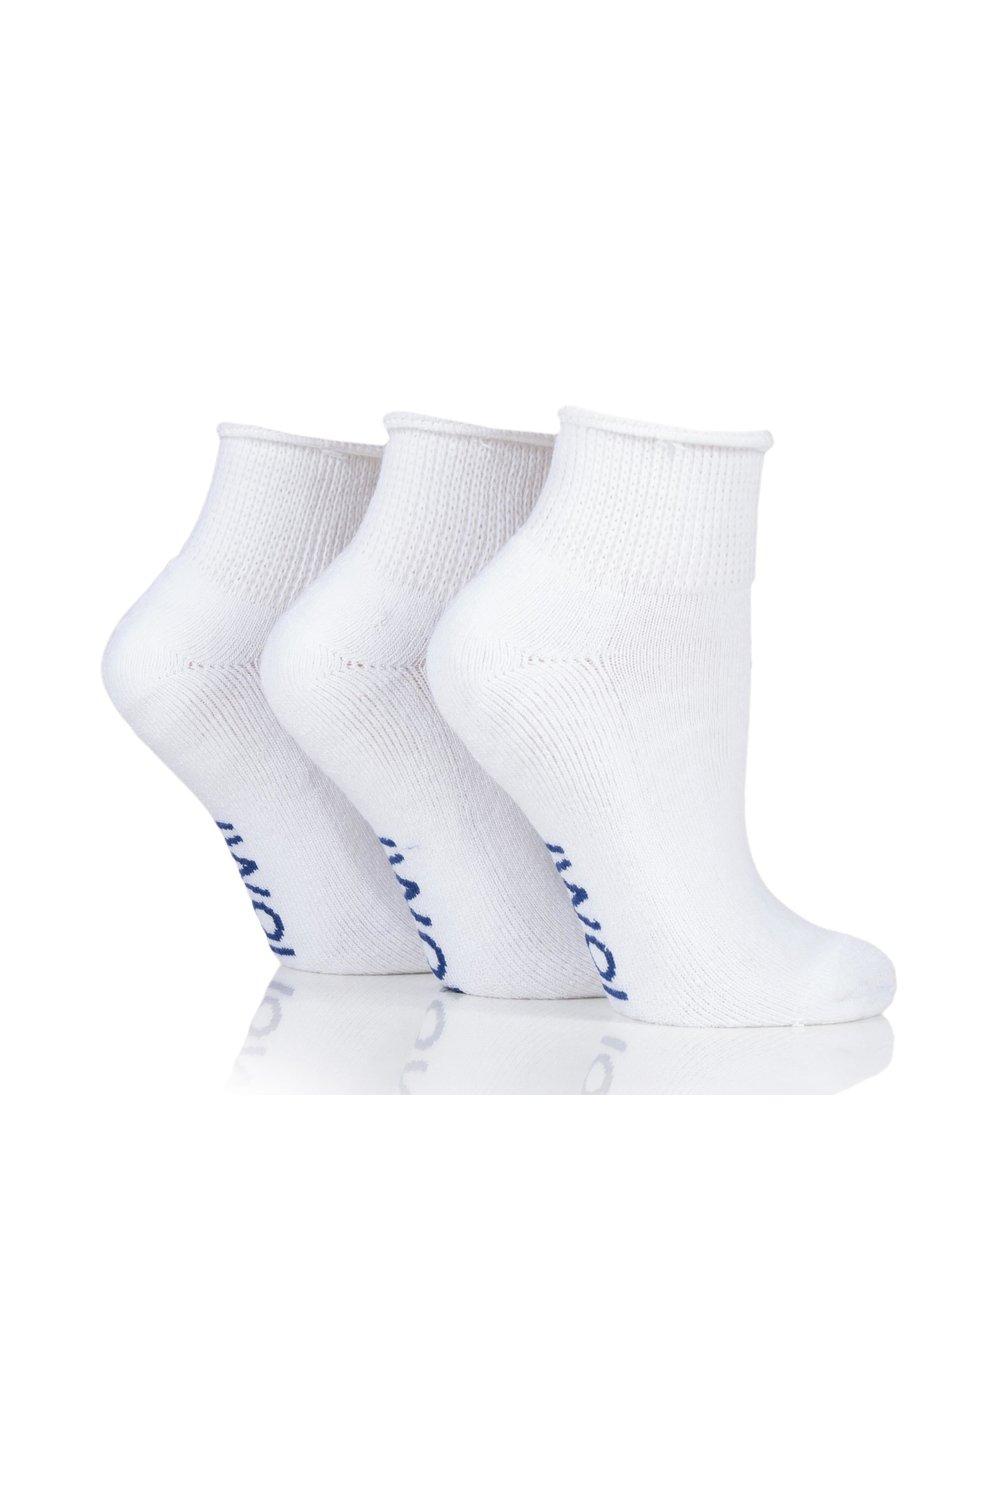 3 Pair Footnurse Cushioned Foot Gentle Grip Diabetic Ankle Socks